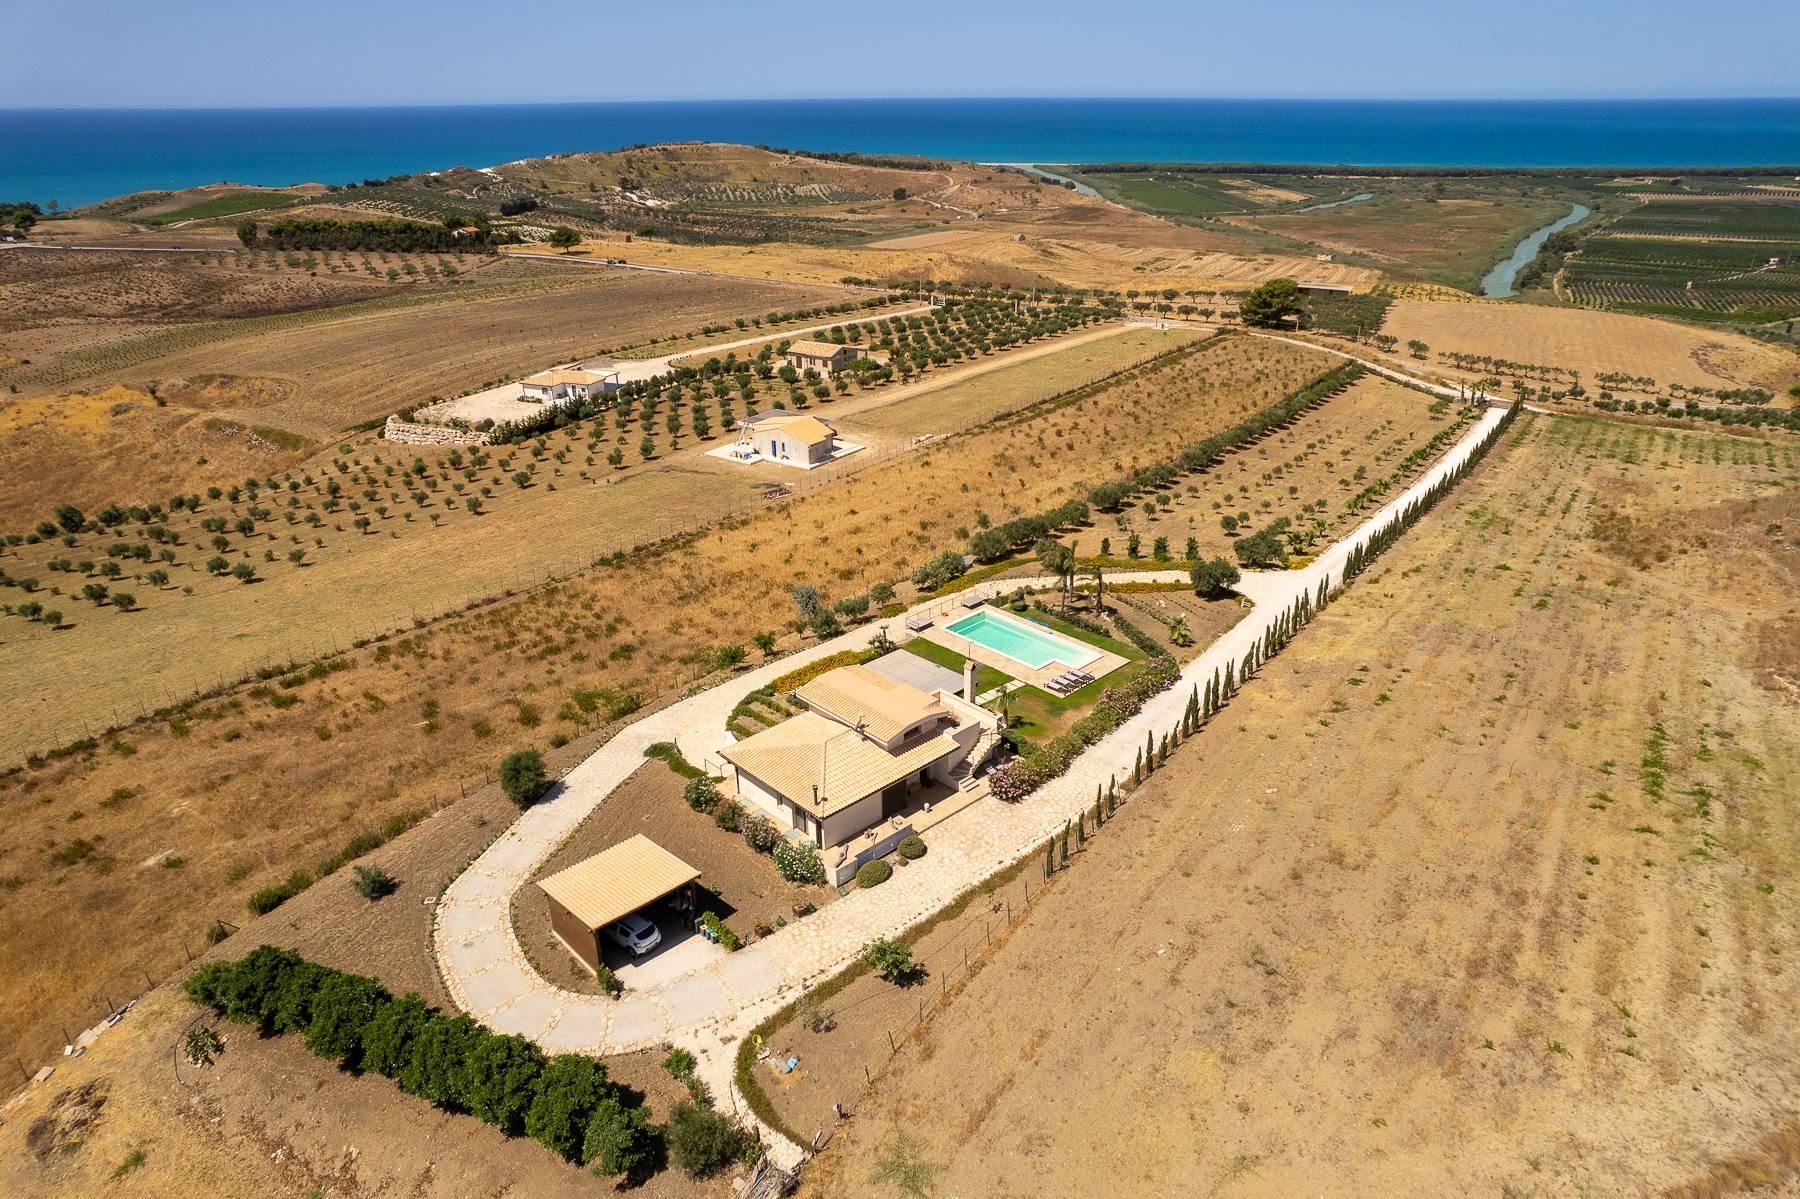 Villa esclusiva con panorama suggestivo sul mare Mediterraneo - 4